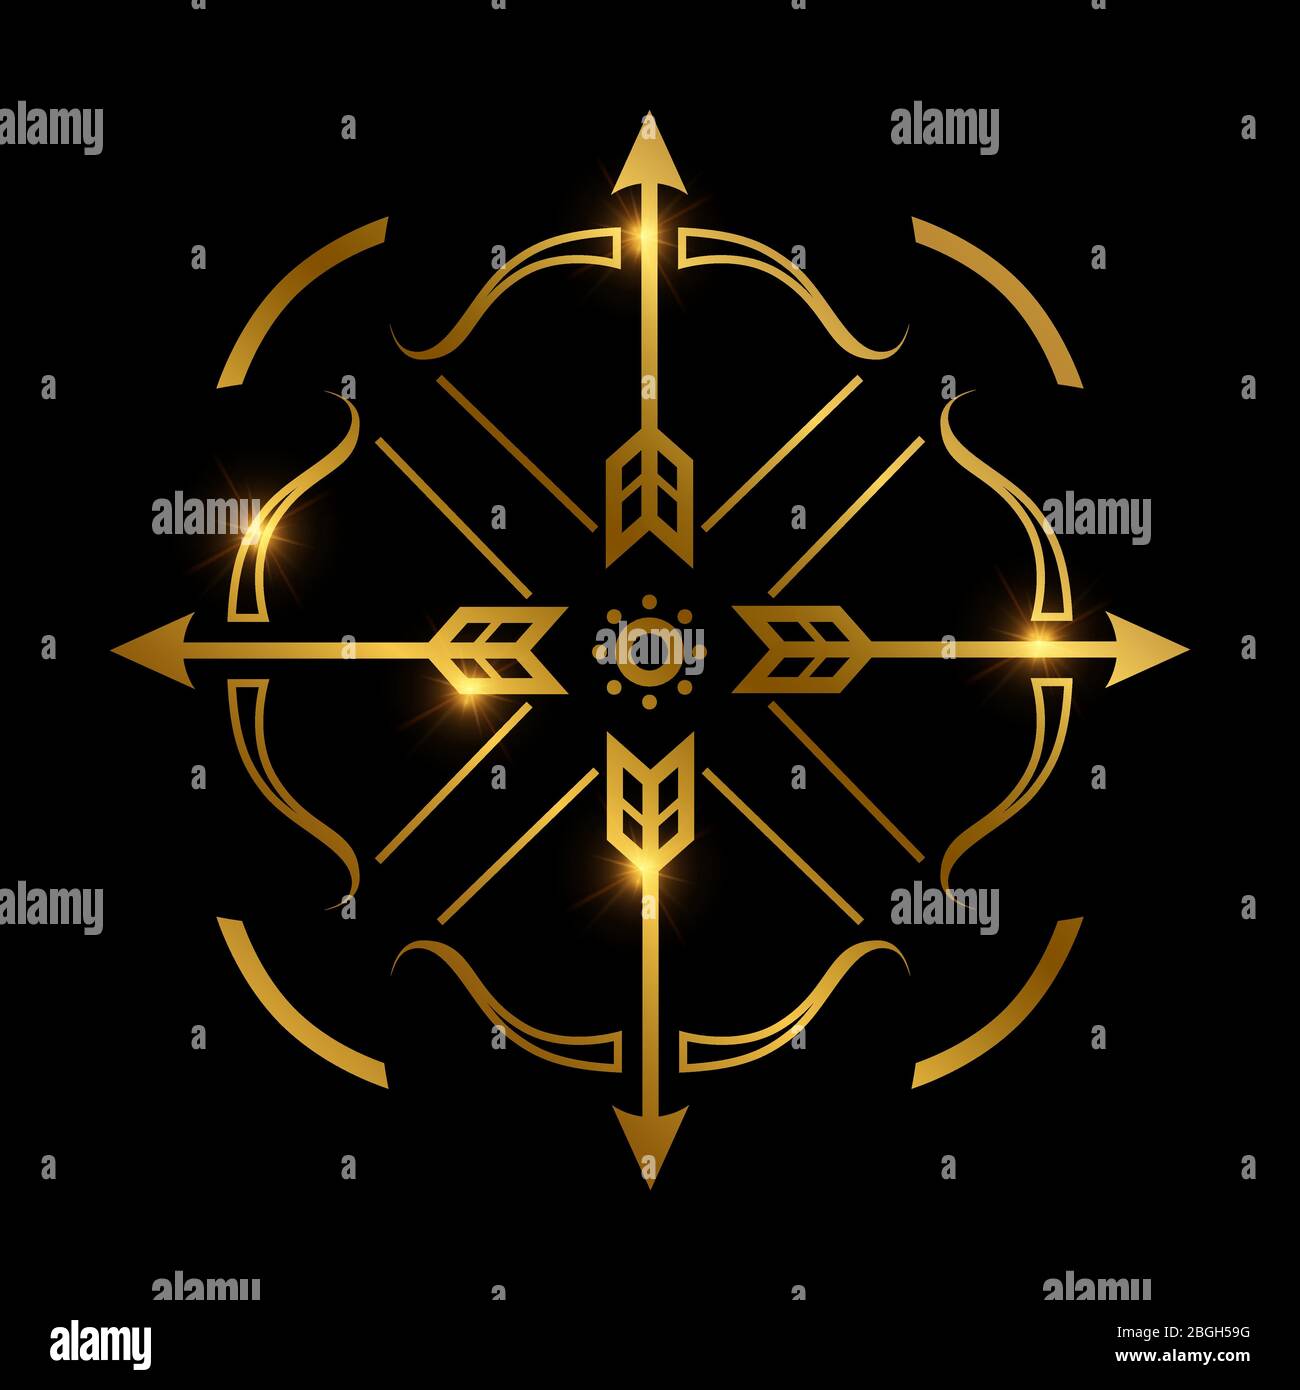 Goldene Schleife und Pfeile auf schwarzem Hintergrund. Bogenschießen Emblem Vektor Design Illustration Stock Vektor